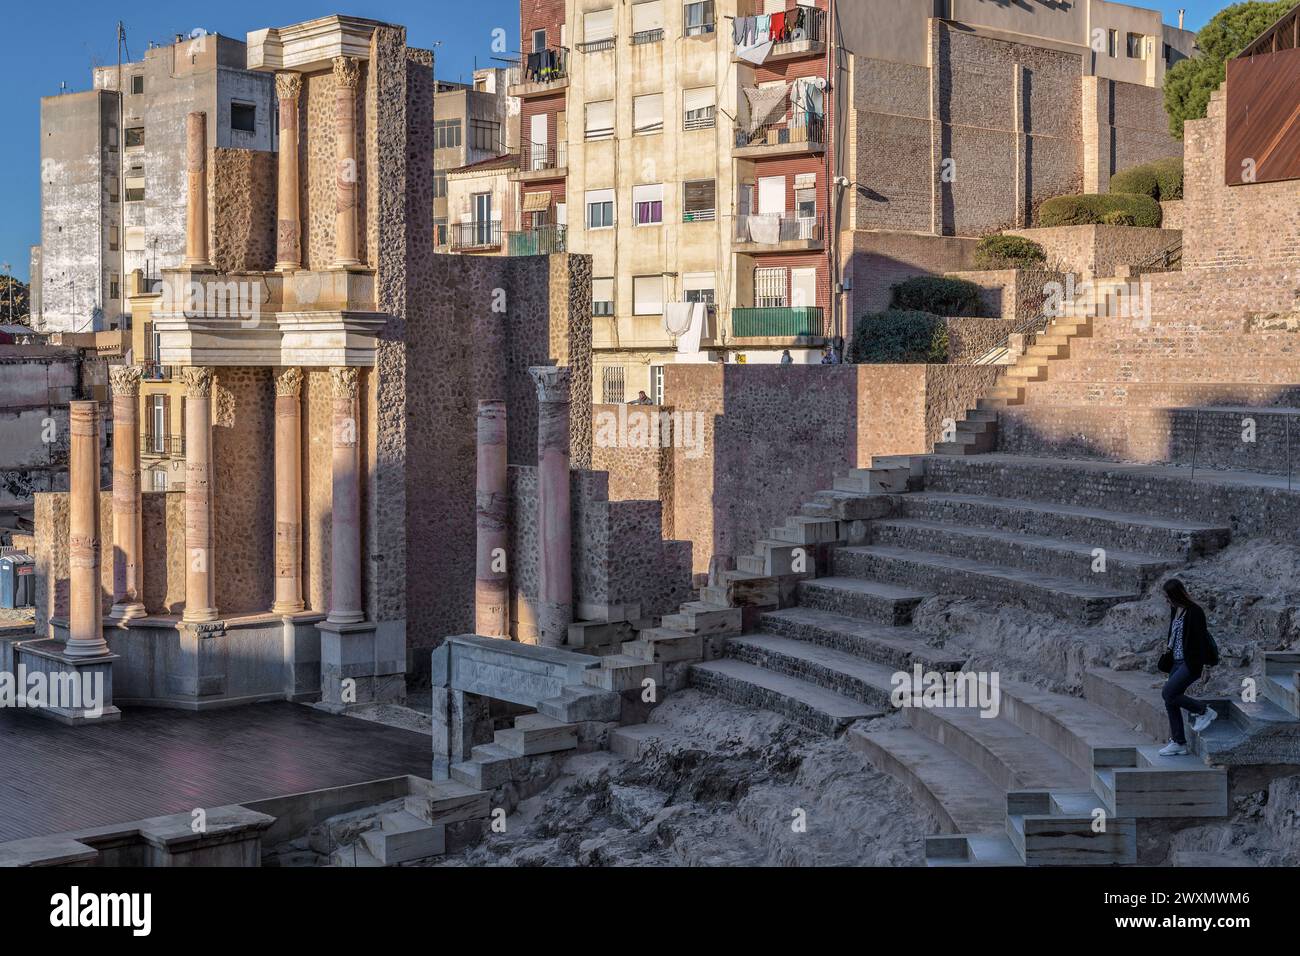 Ruines en cours de restauration du théâtre romain du 1er siècle av. J.-C., découverte archéologique dans la ville de Carthagène, région de Murcie, Espagne. Banque D'Images